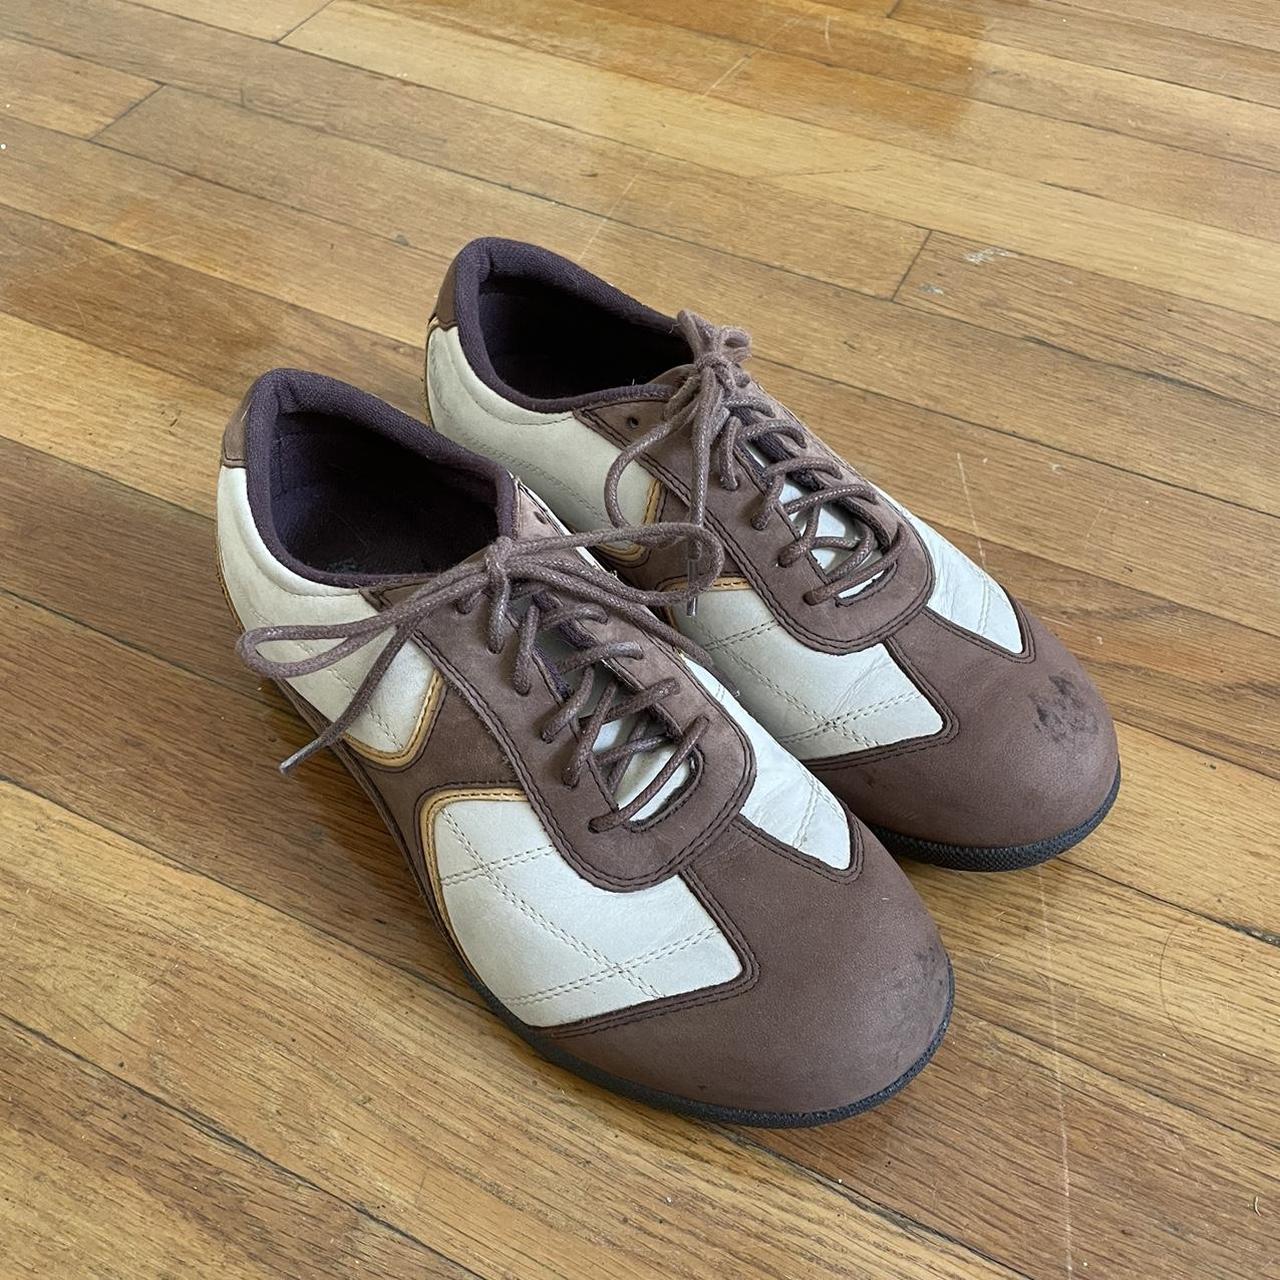 Barefoot Freedom Brown/Beige Suede Leather sneakers - Depop